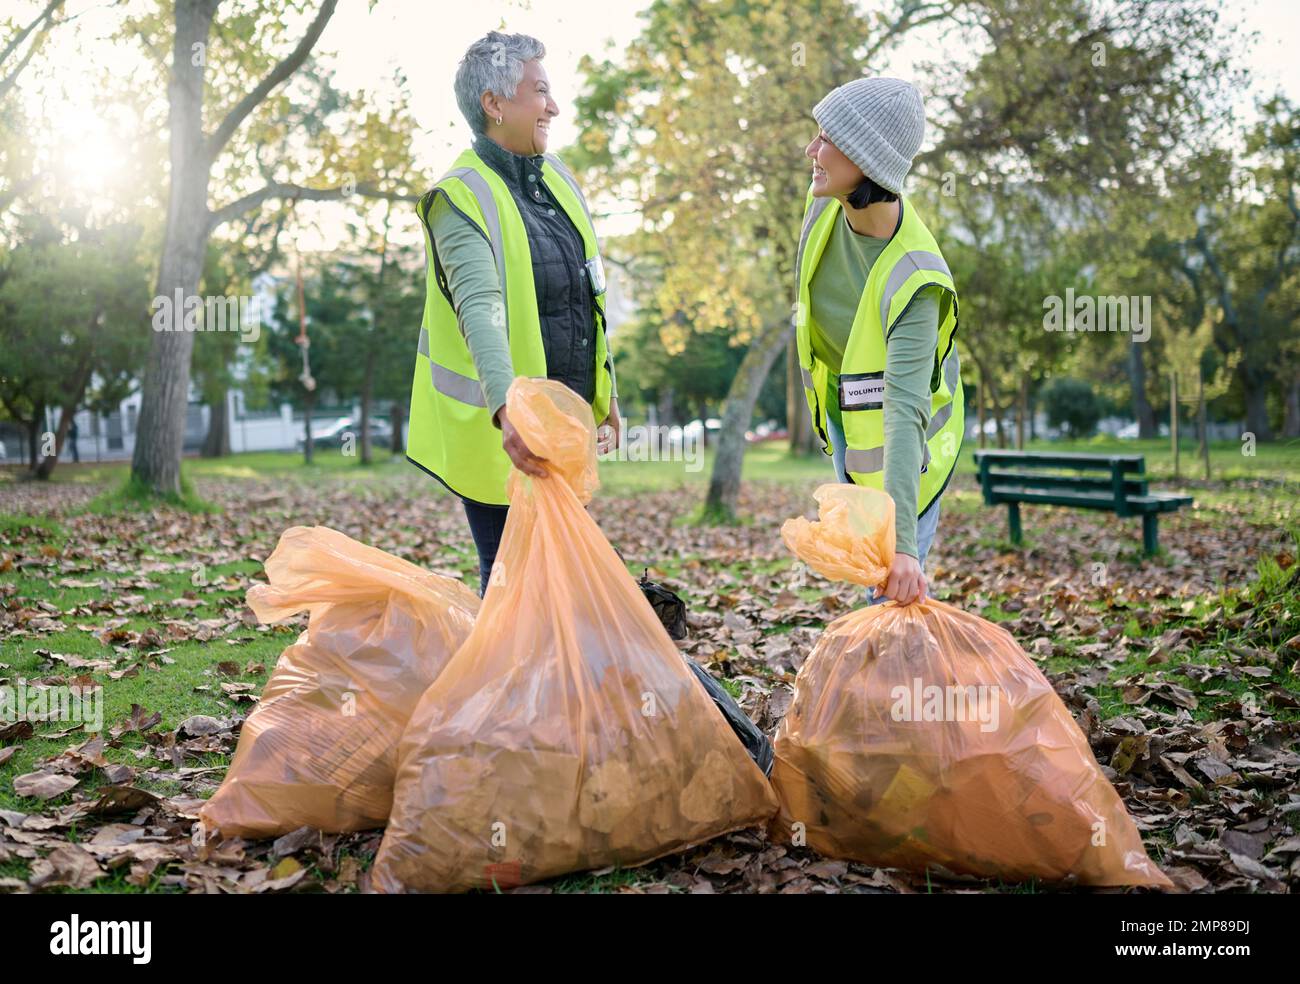 Les femmes bénévoles, le service communautaire et le parc de nettoyage avec sac à ordures pour un environnement propre. L'équipe parle et aide avec les déchets pour être écologique Banque D'Images